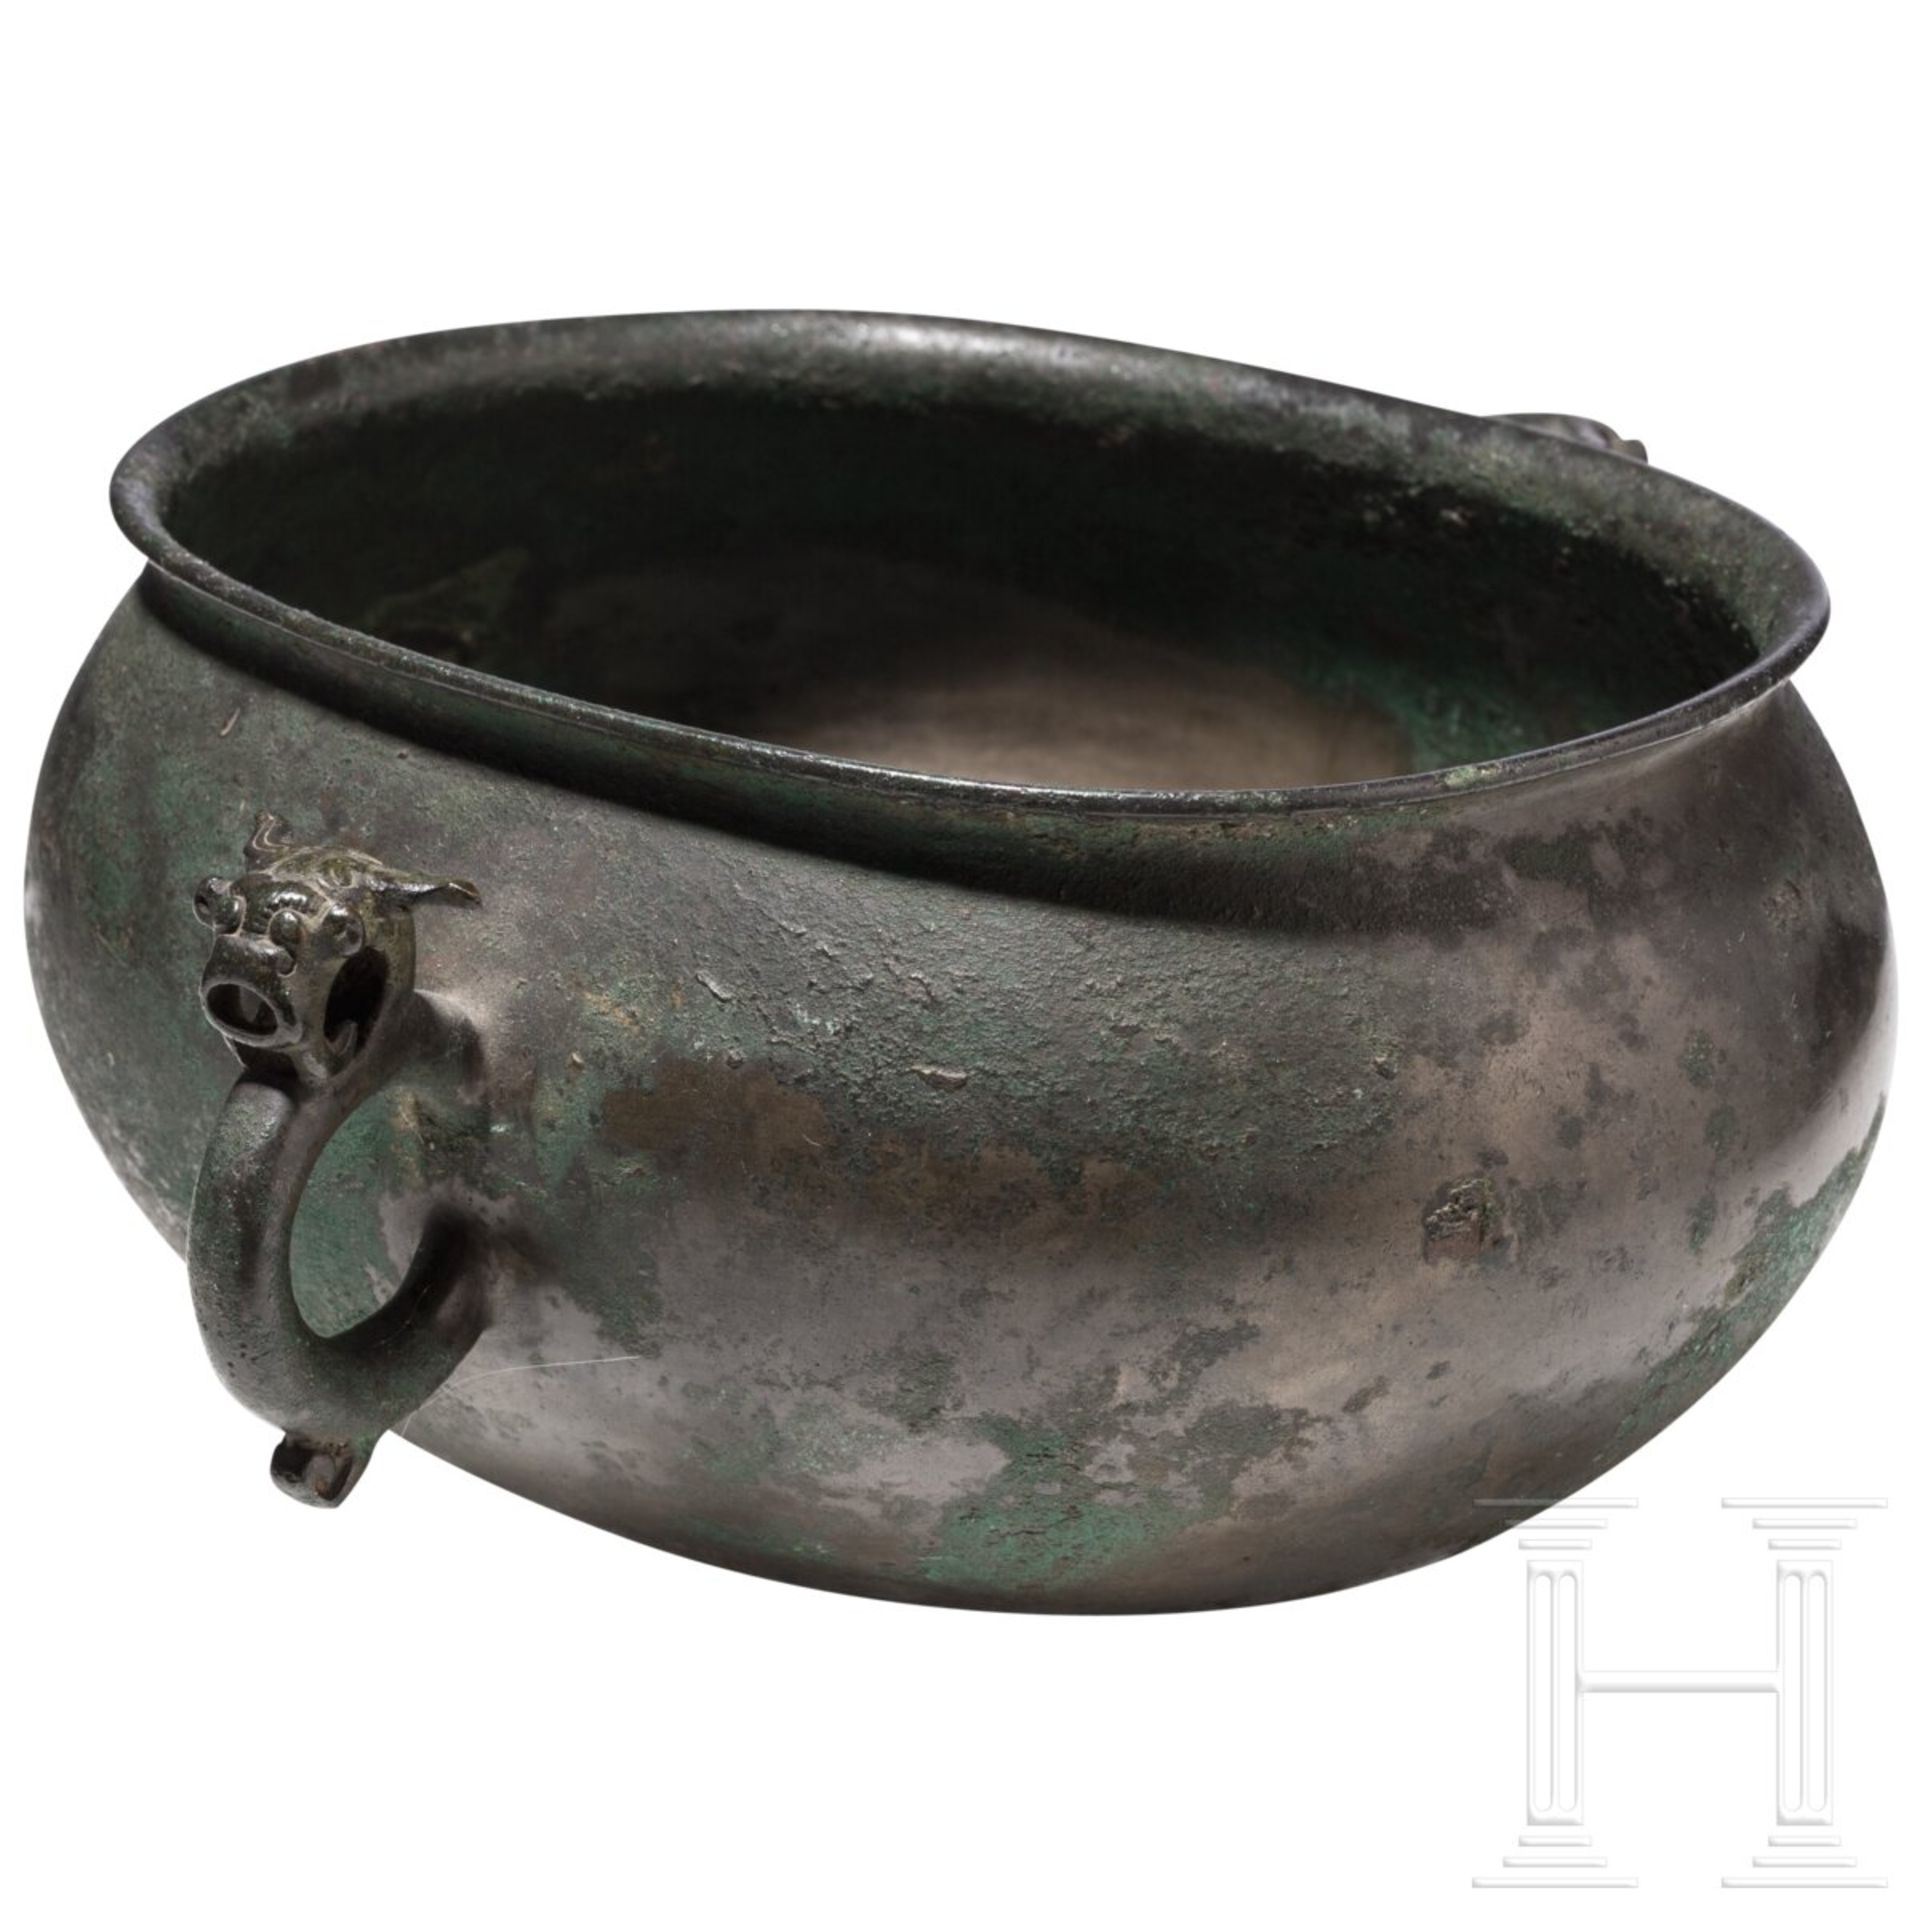 Rituelle bronzene Speiseschale (dui), China, Zeit der streitenden Reiche, 475 - 221 v. Chr.